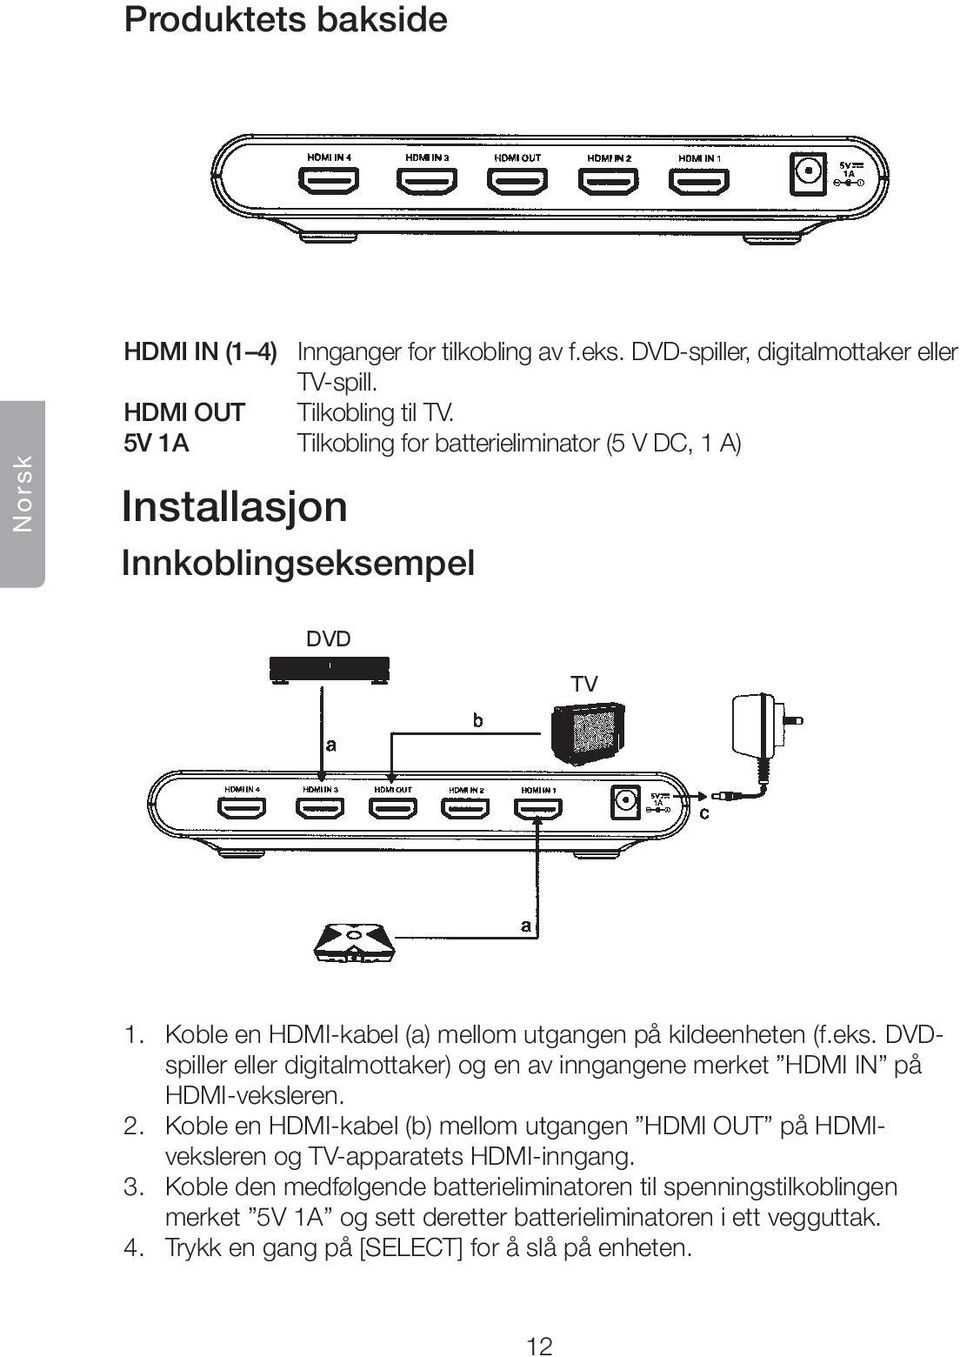 2. Koble en HDMI-kabel (b) mellom utgangen HDMI OUT på HDMIveksleren og TV-apparatets HDMI-inngang. 3.